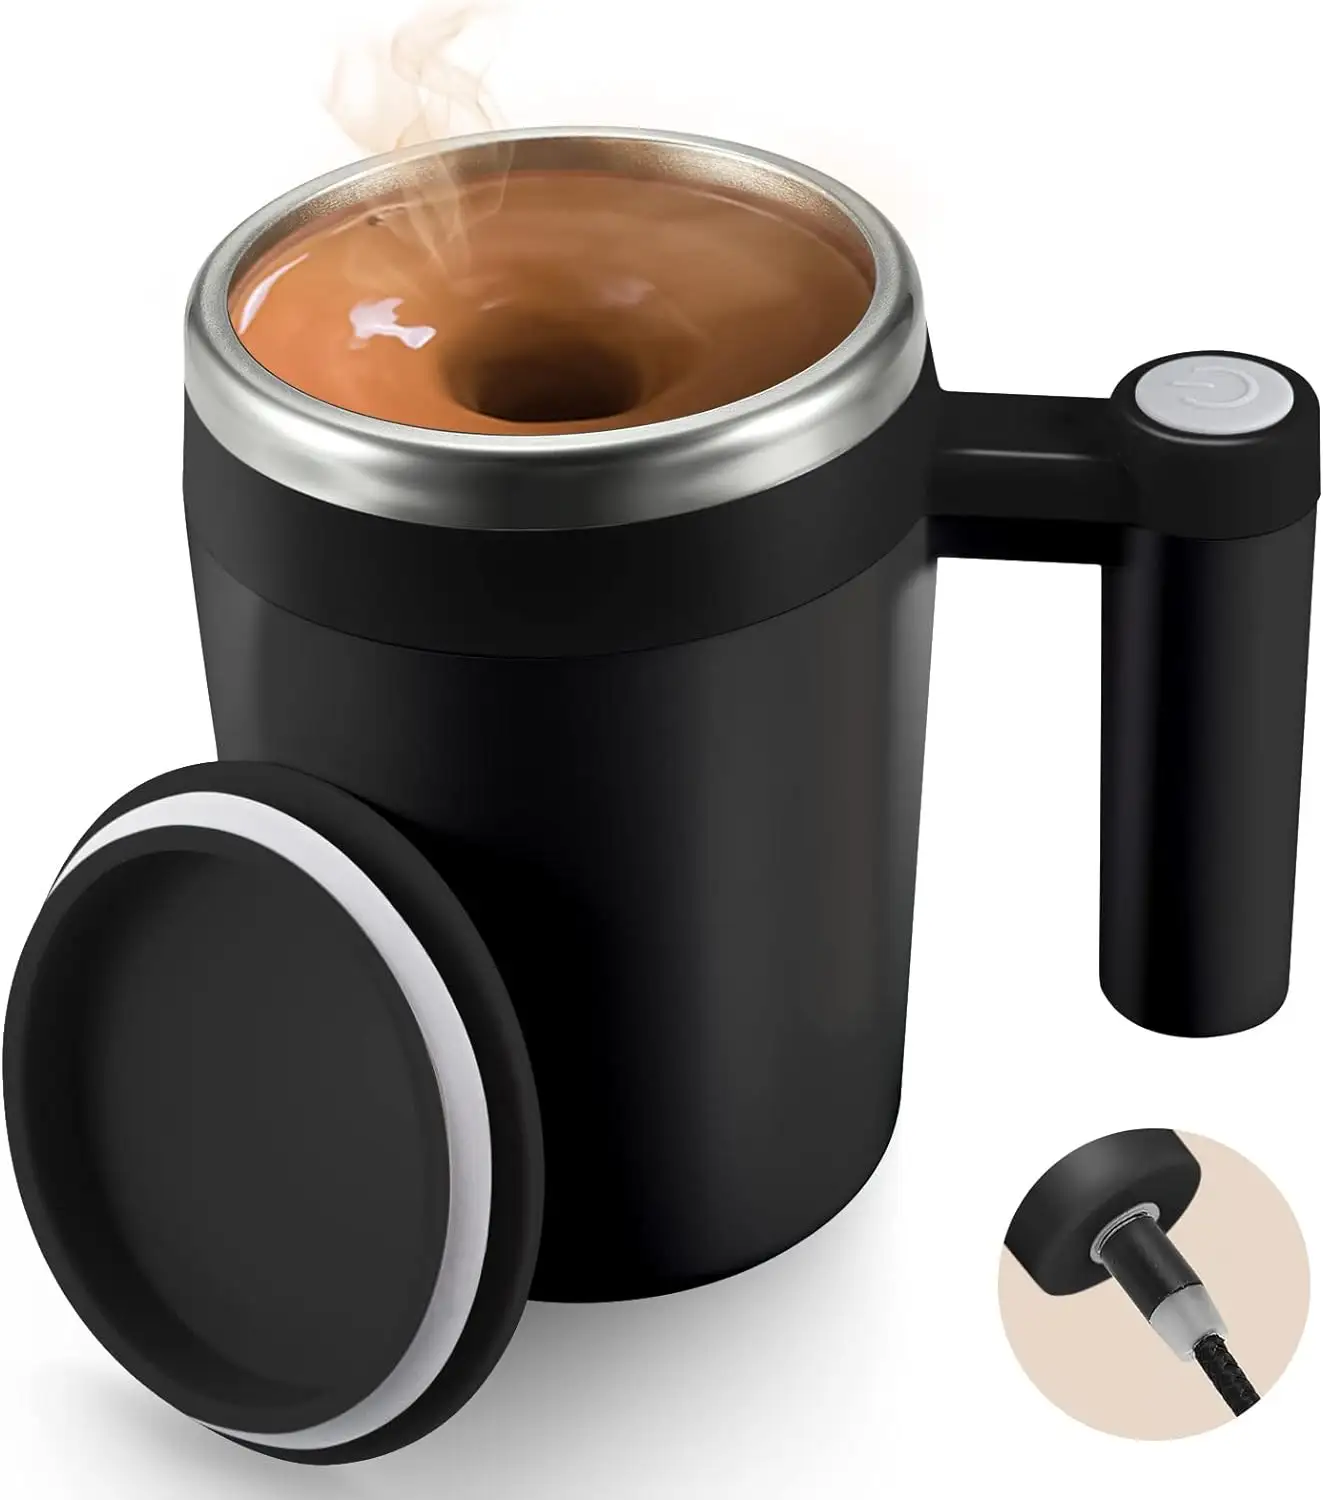 Termos kopi 13.5oz 400ml, mug pengaduk kopi elektrik dapat diisi ulang untuk kopi susu cokelat dan minuman lainnya